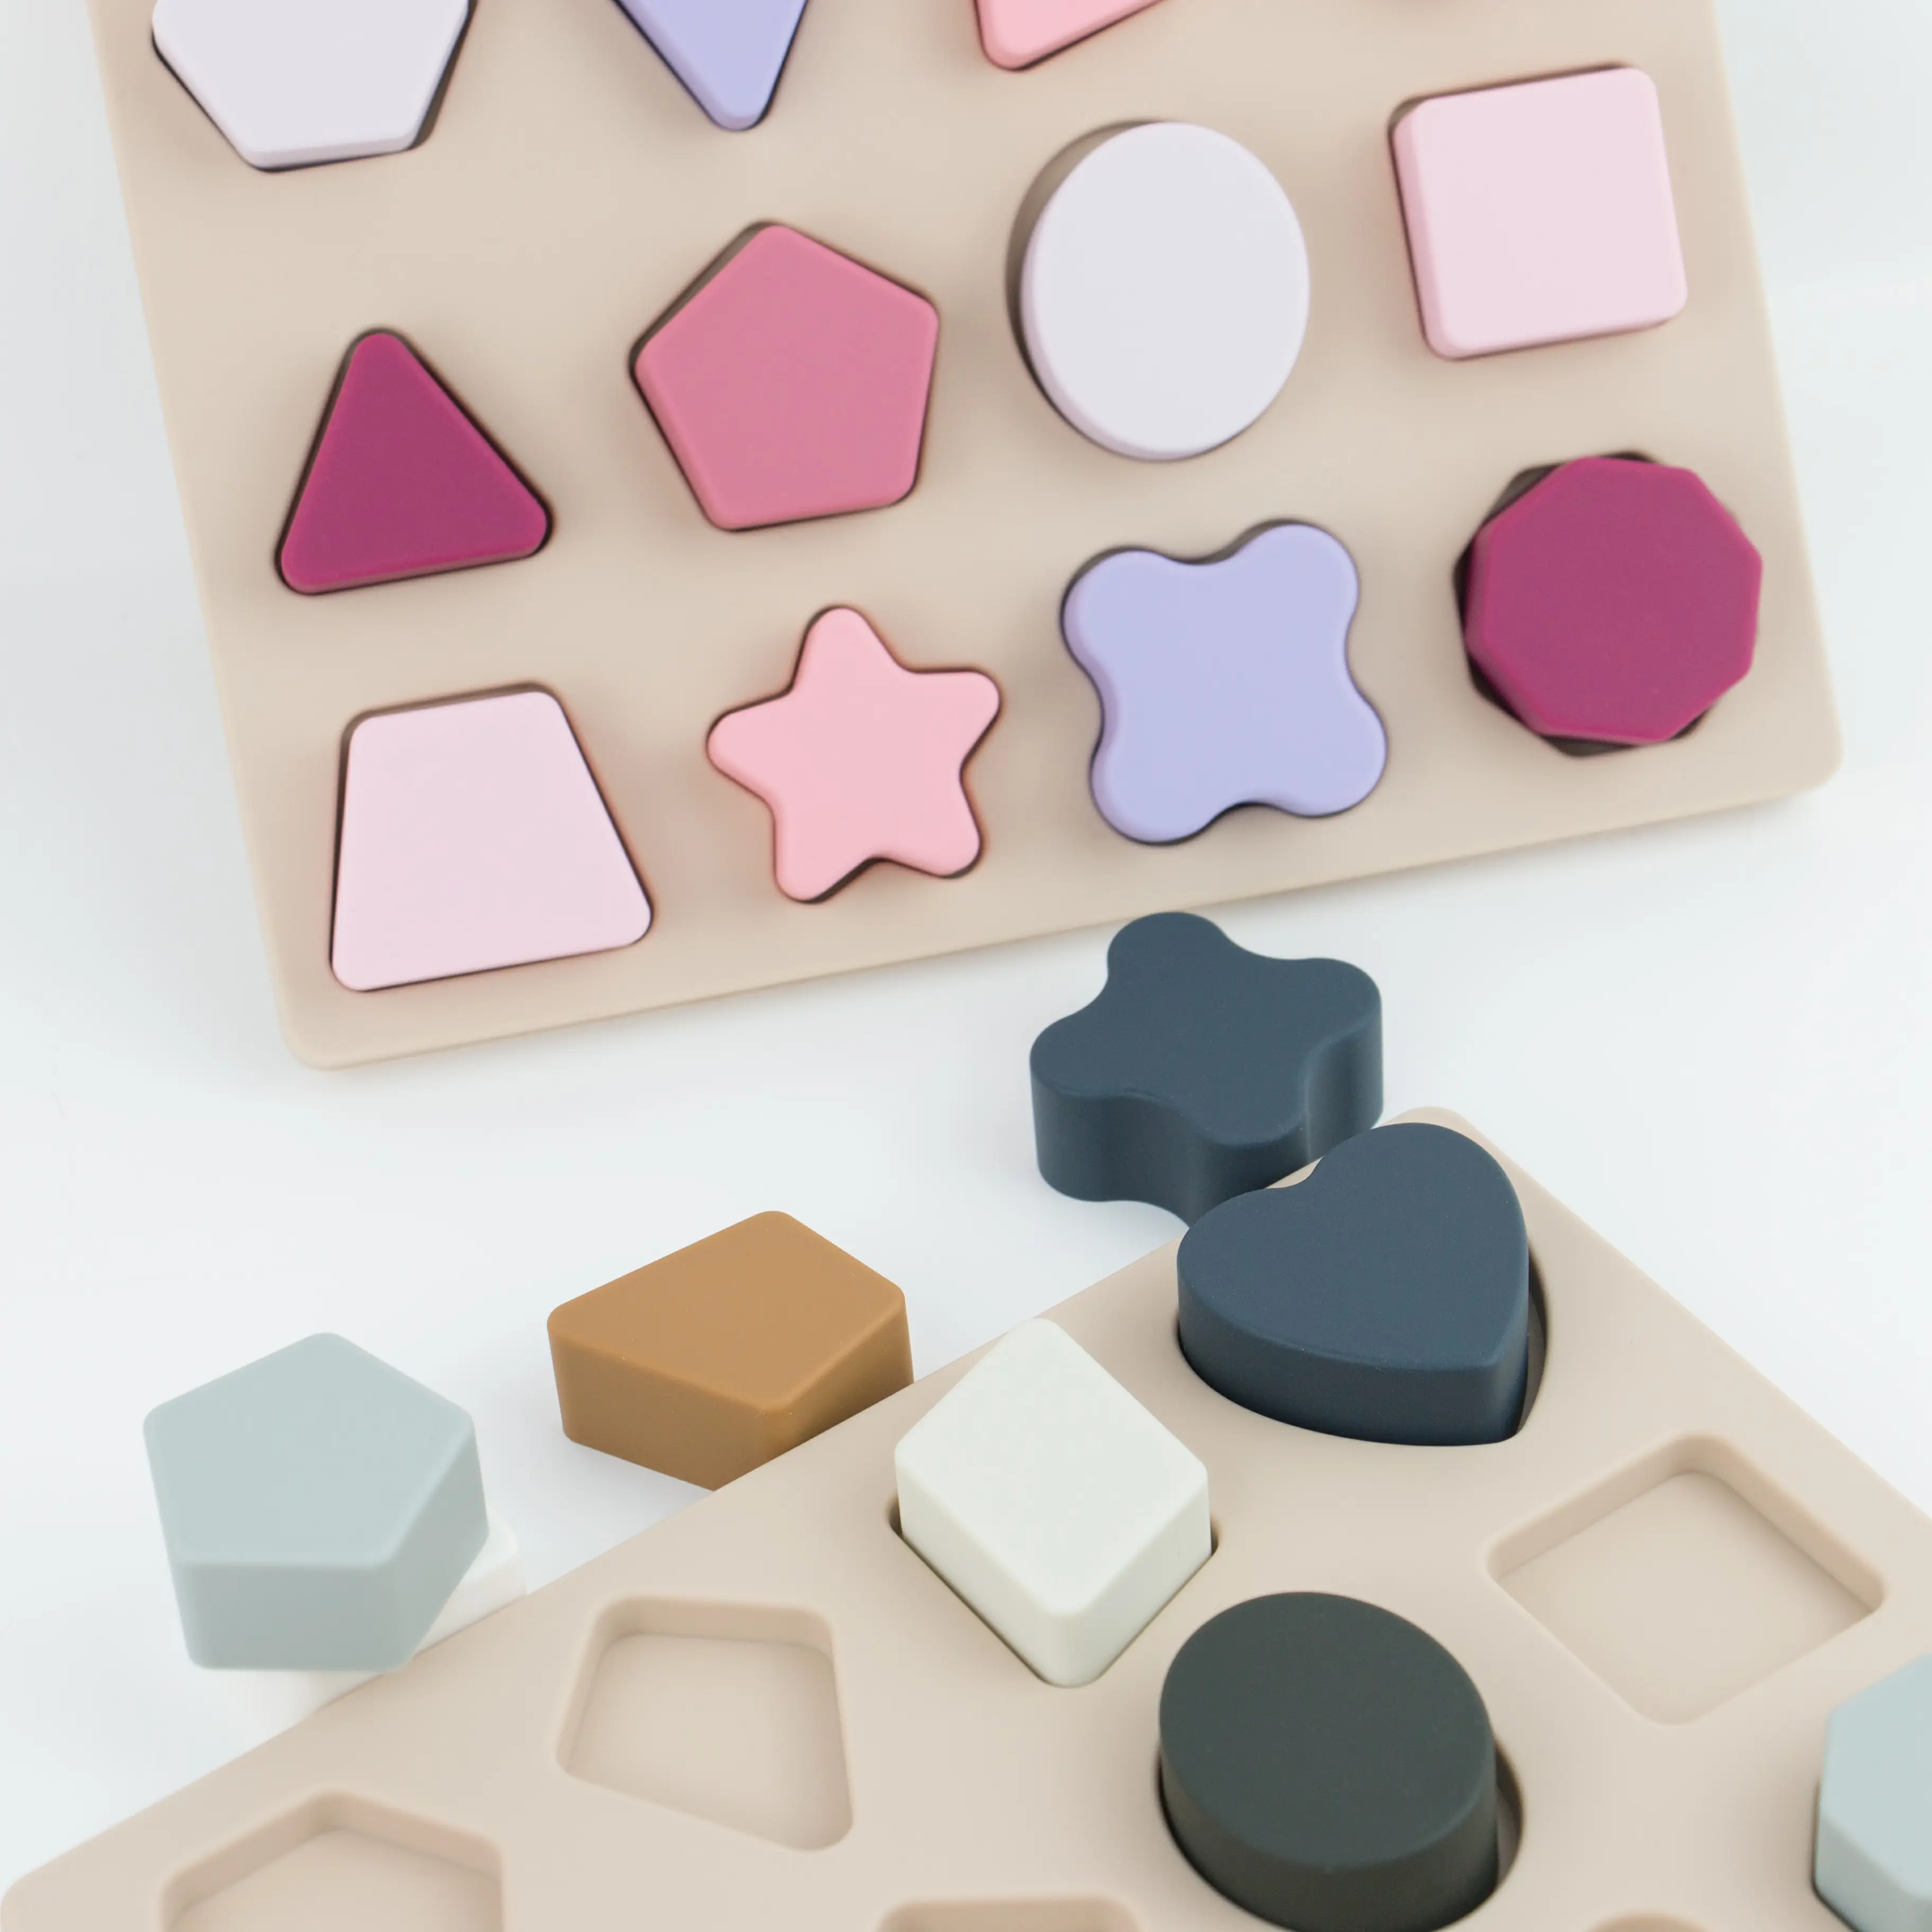 Usine nouveauté semblant jouer ensemble enfants Silicone Puzzle jouet Montessori éducation Silikon bébé silicone Babi jouet